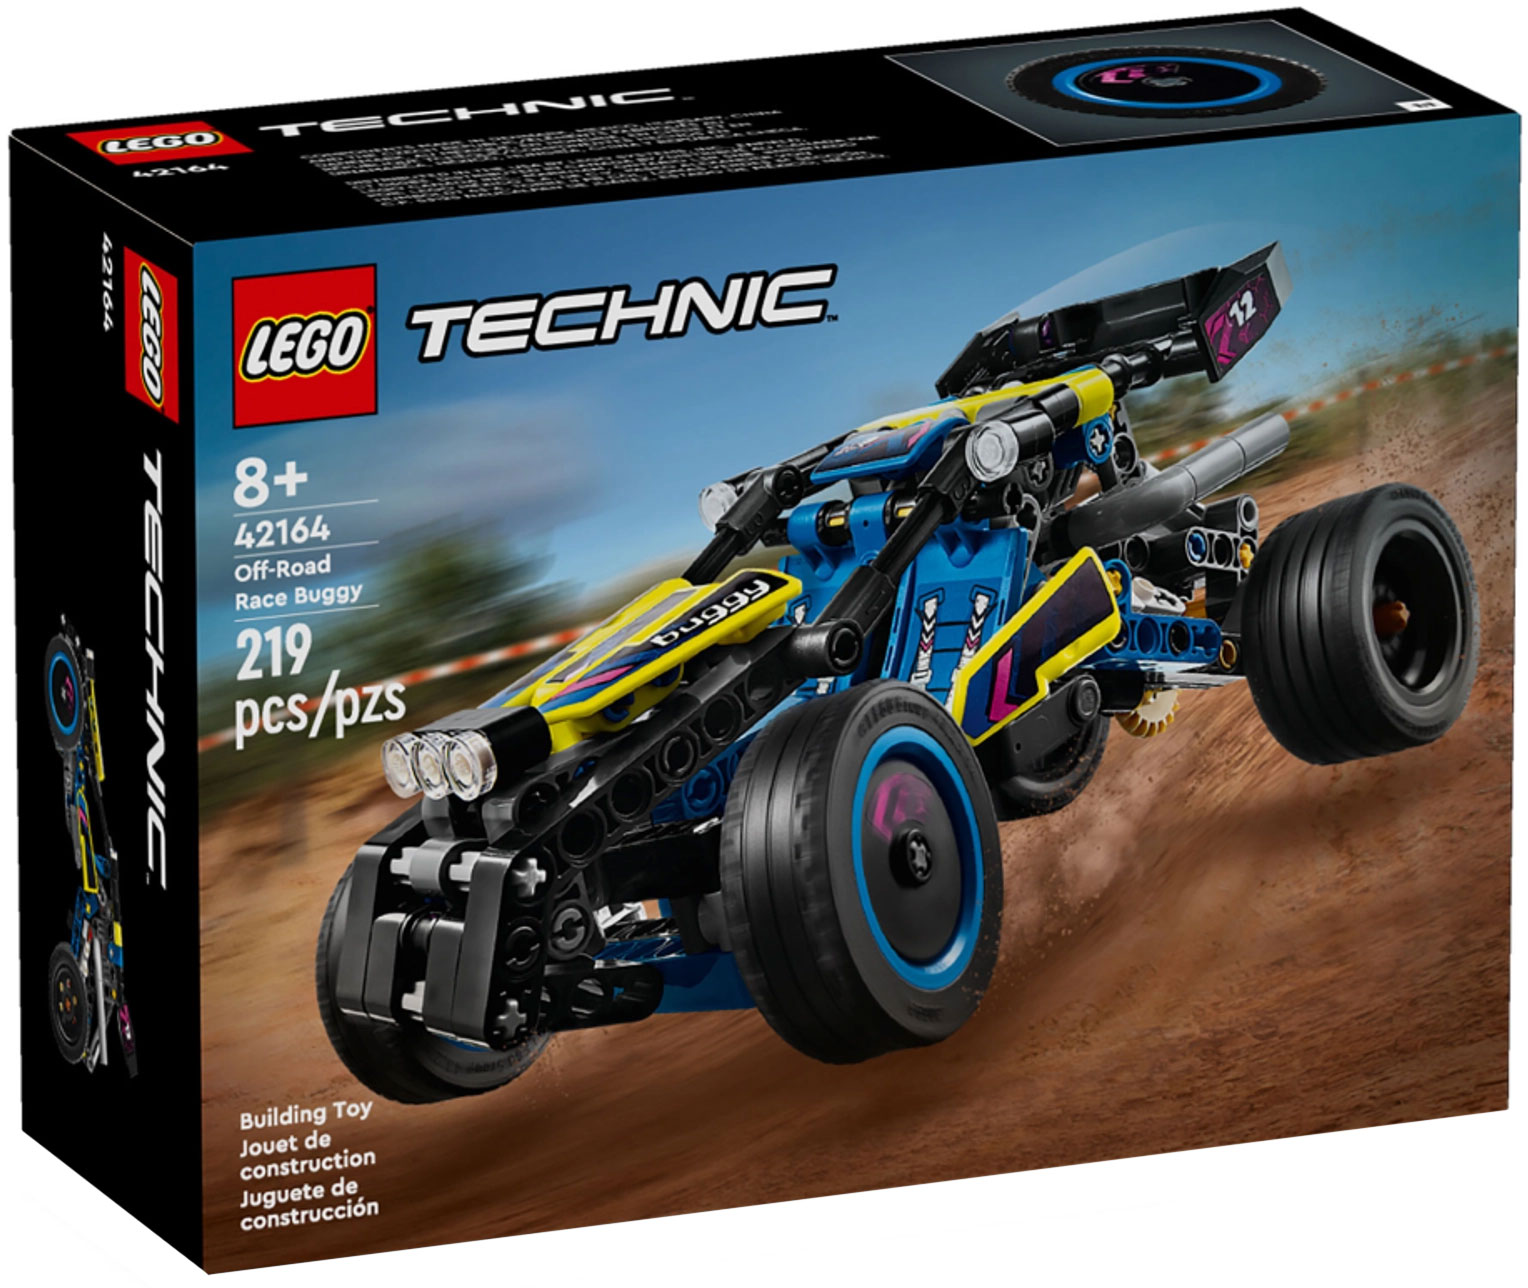 LEGO Technic 42164 pas cher, Le buggy tout-terrain de course